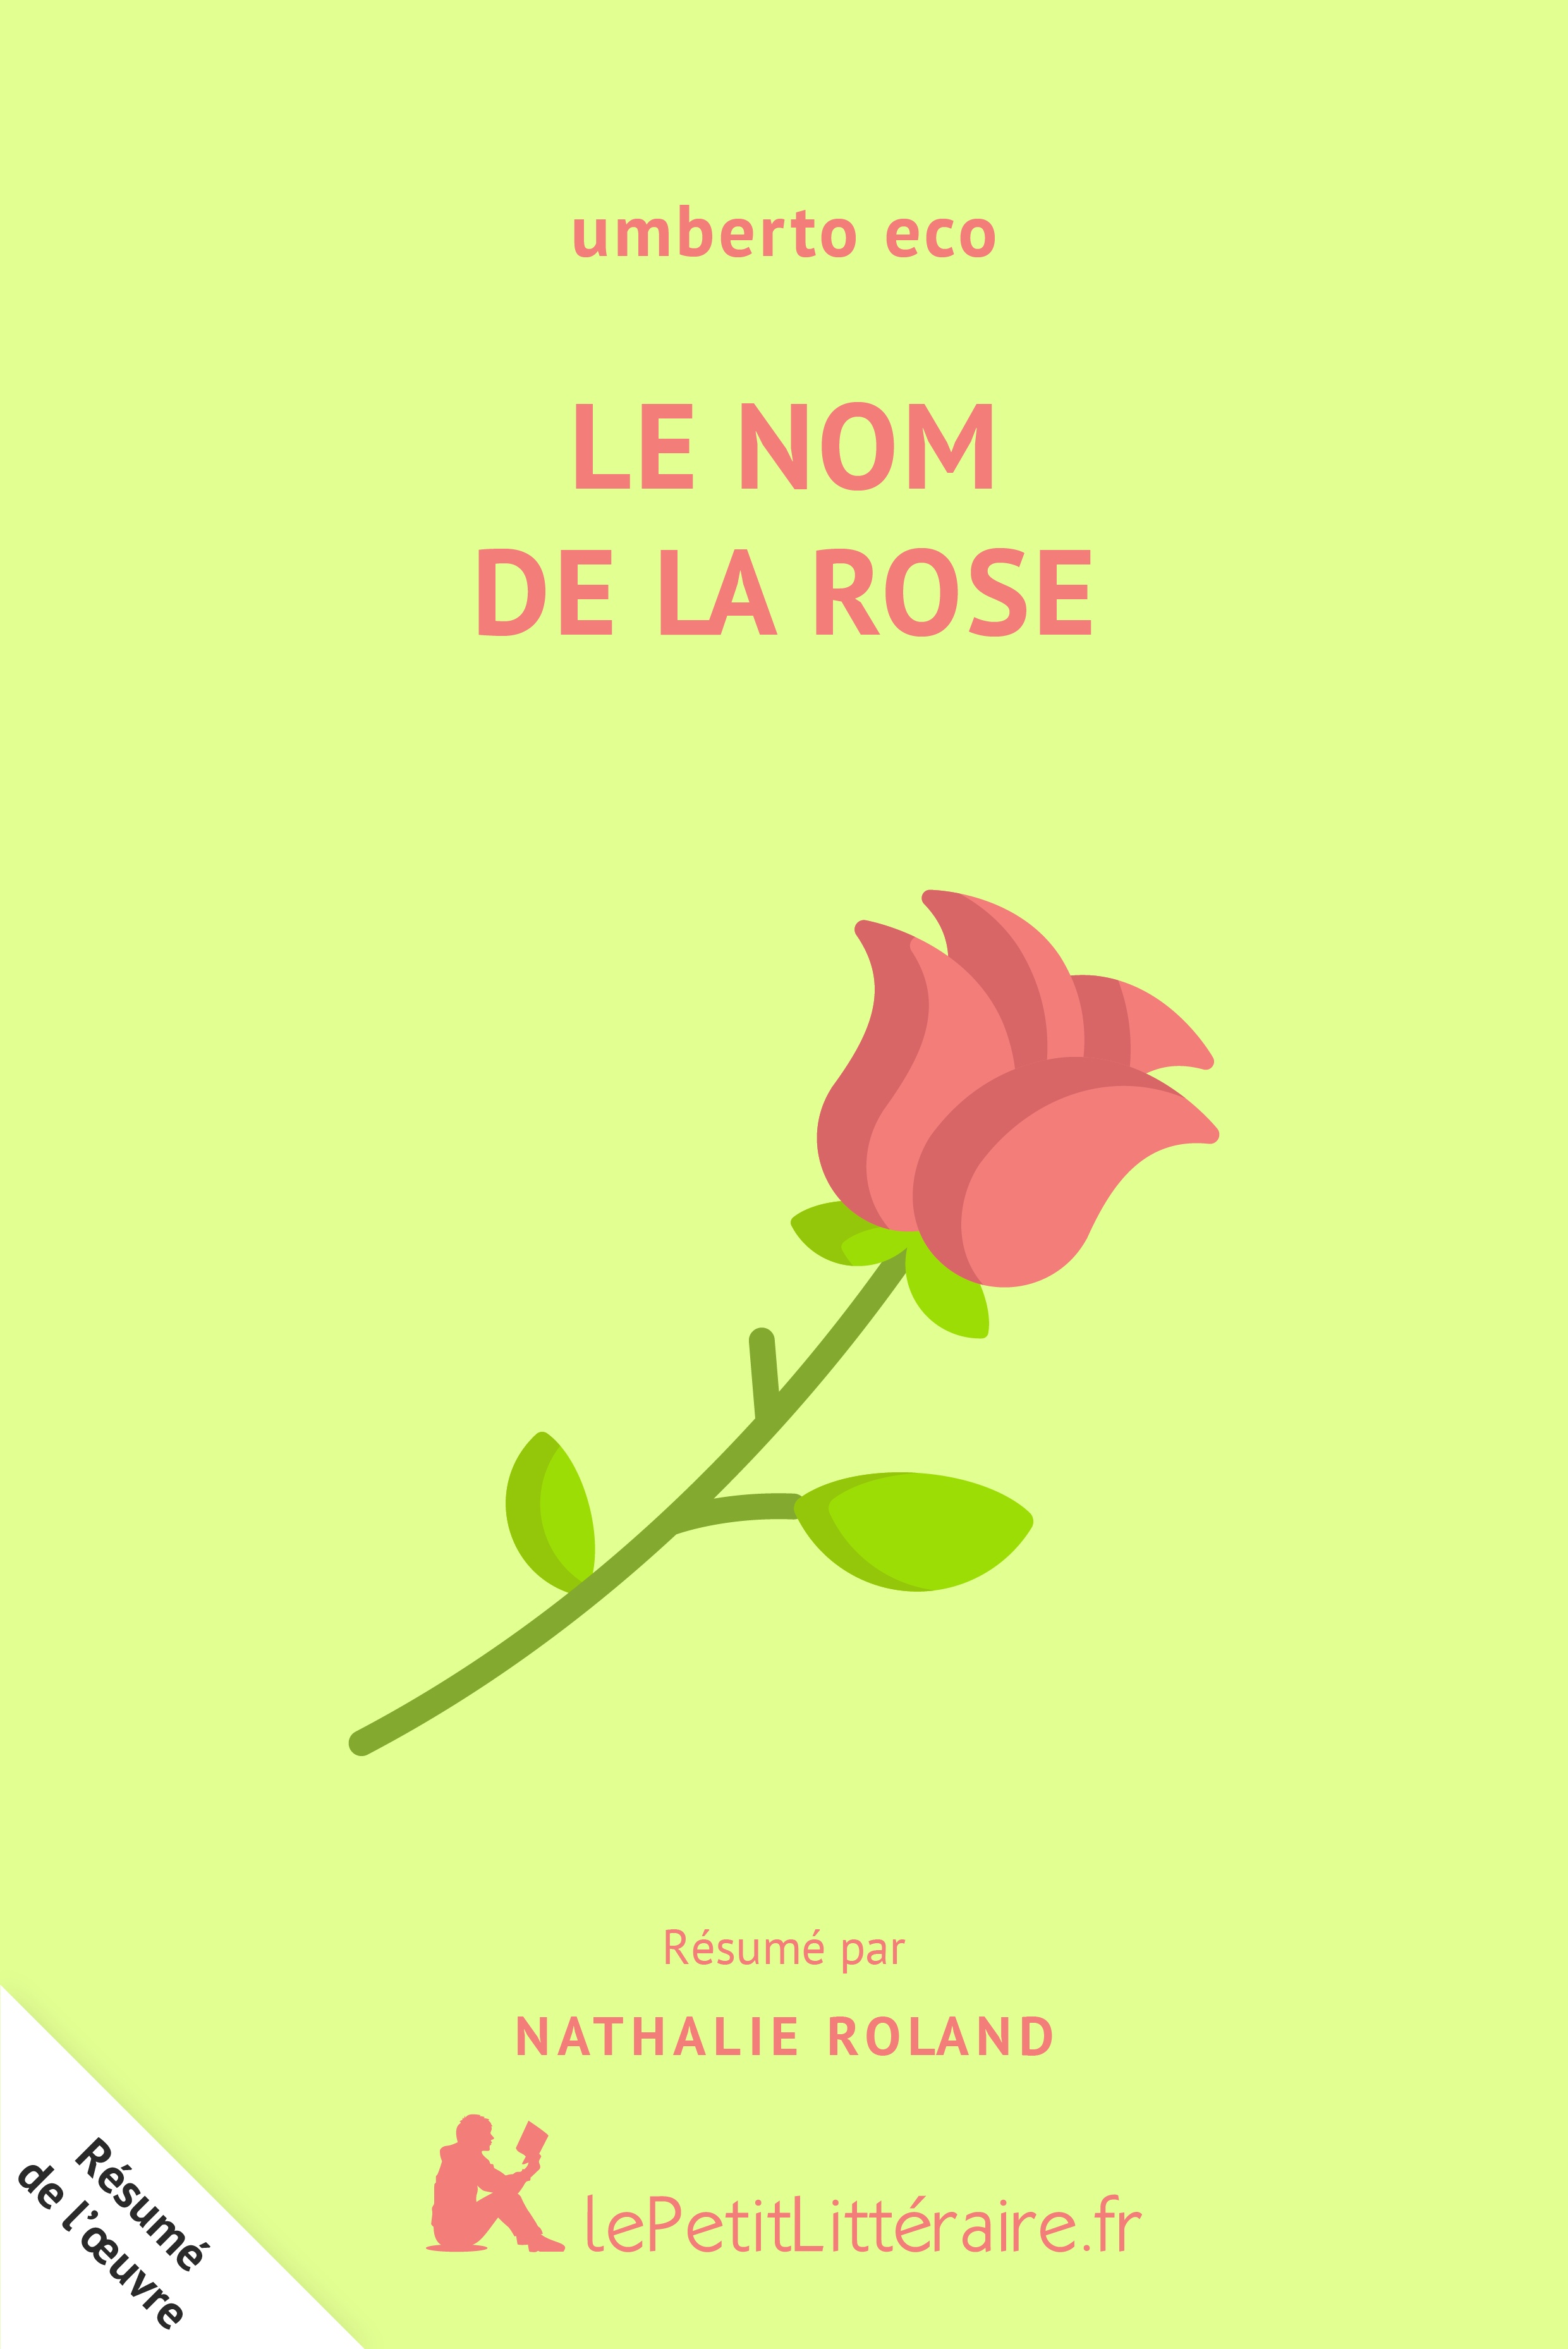 lePetitLitteraire.fr - Le Nom de la rose : Résumé du livre